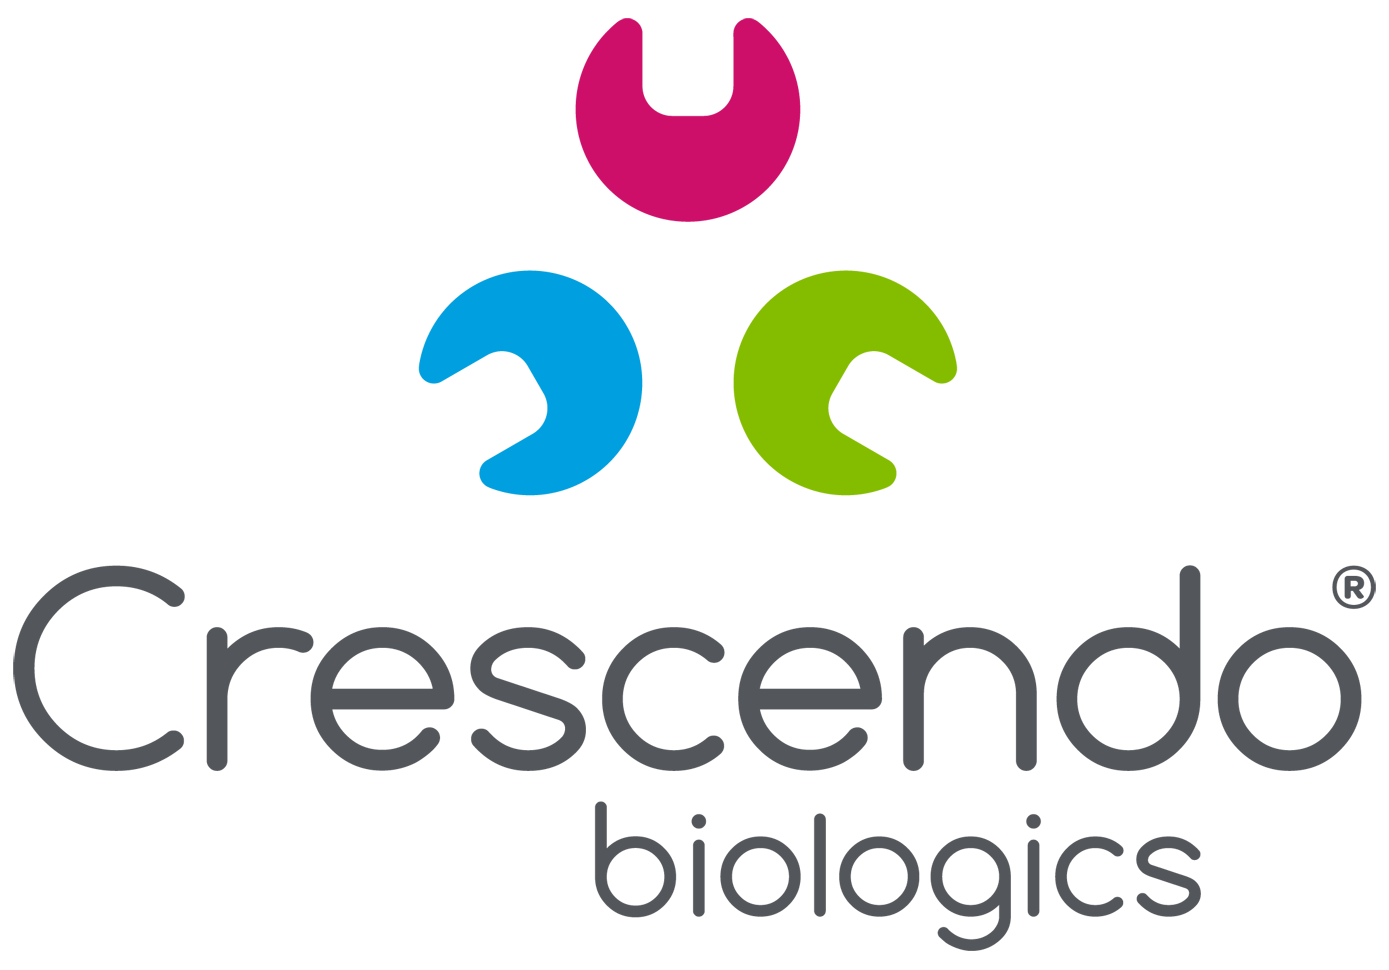 Crescendo Biologics logo.png